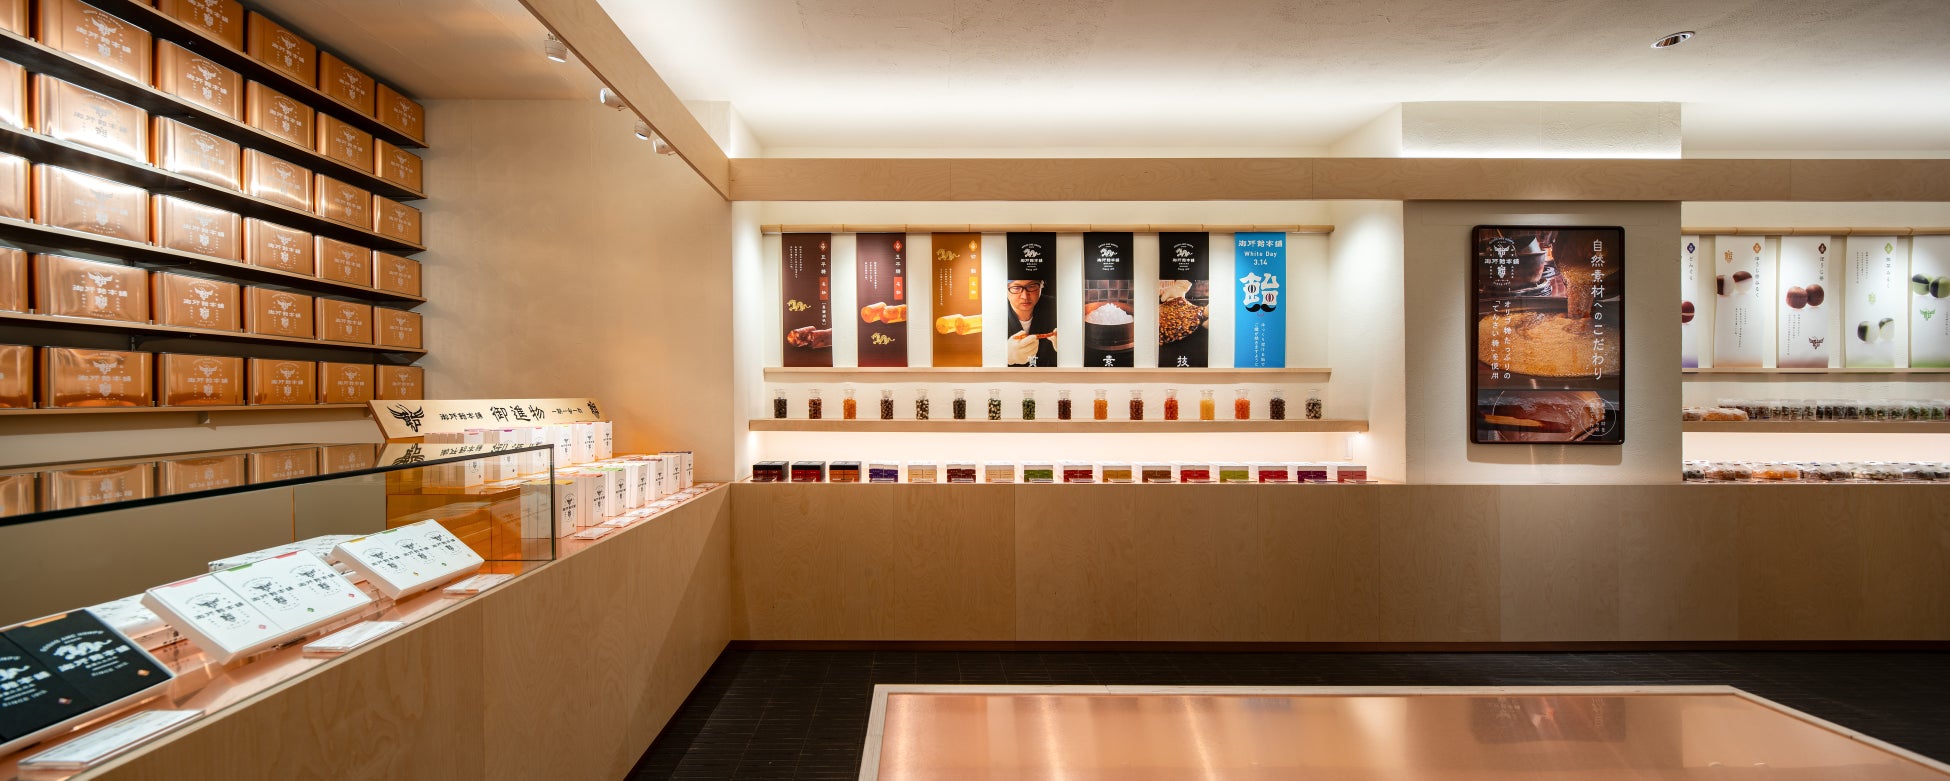 京都三条河原町・創業112年の飴屋がリニューアルオープン。てんさい糖で作る「無香料・無着色の飴」を販売開始